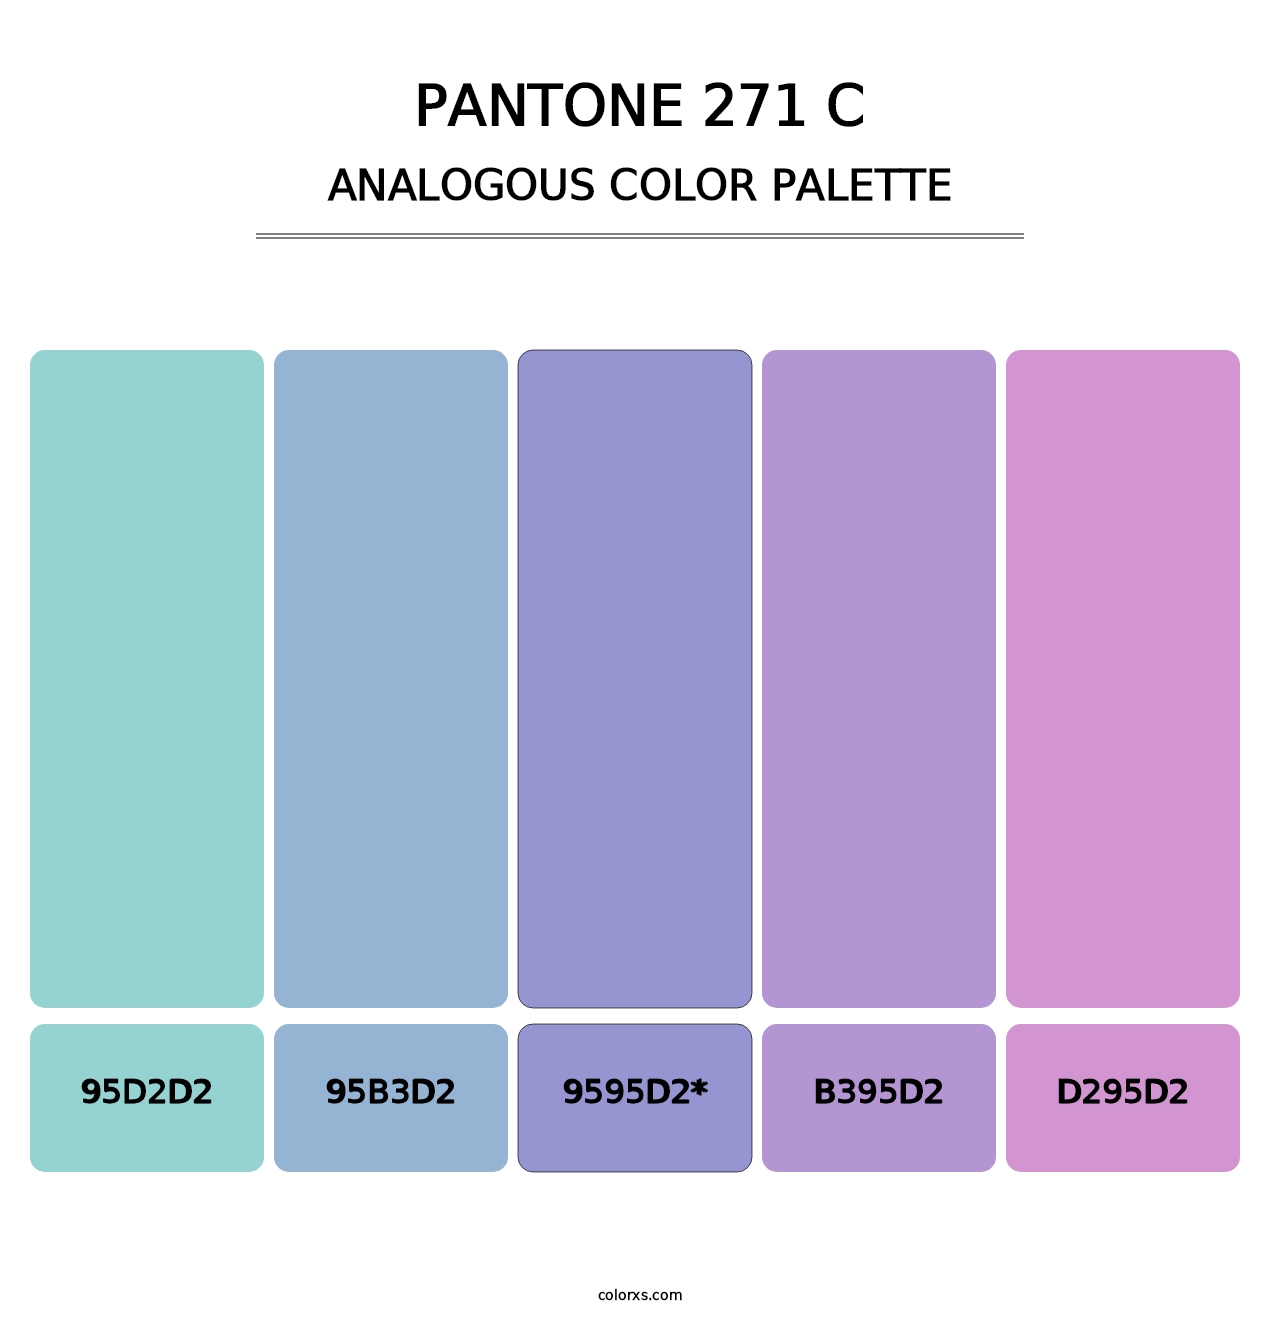 PANTONE 271 C - Analogous Color Palette